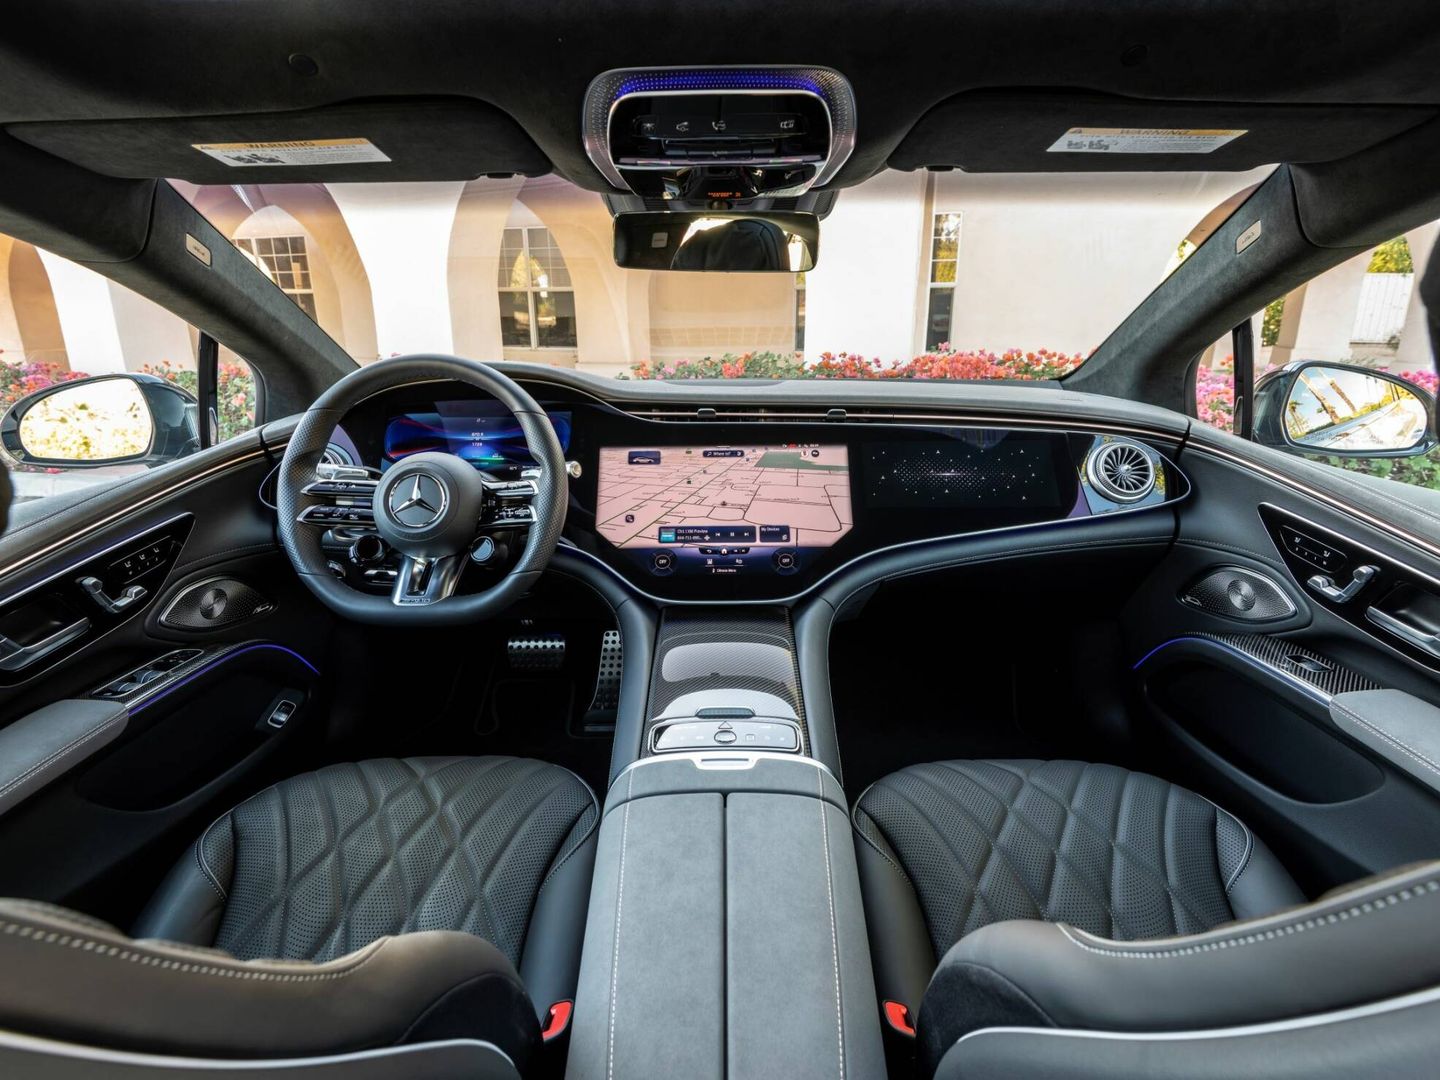 El interior tiene personalización AMG en volante, pedales, tapizados, alfombras... Y los asientos son específicos.